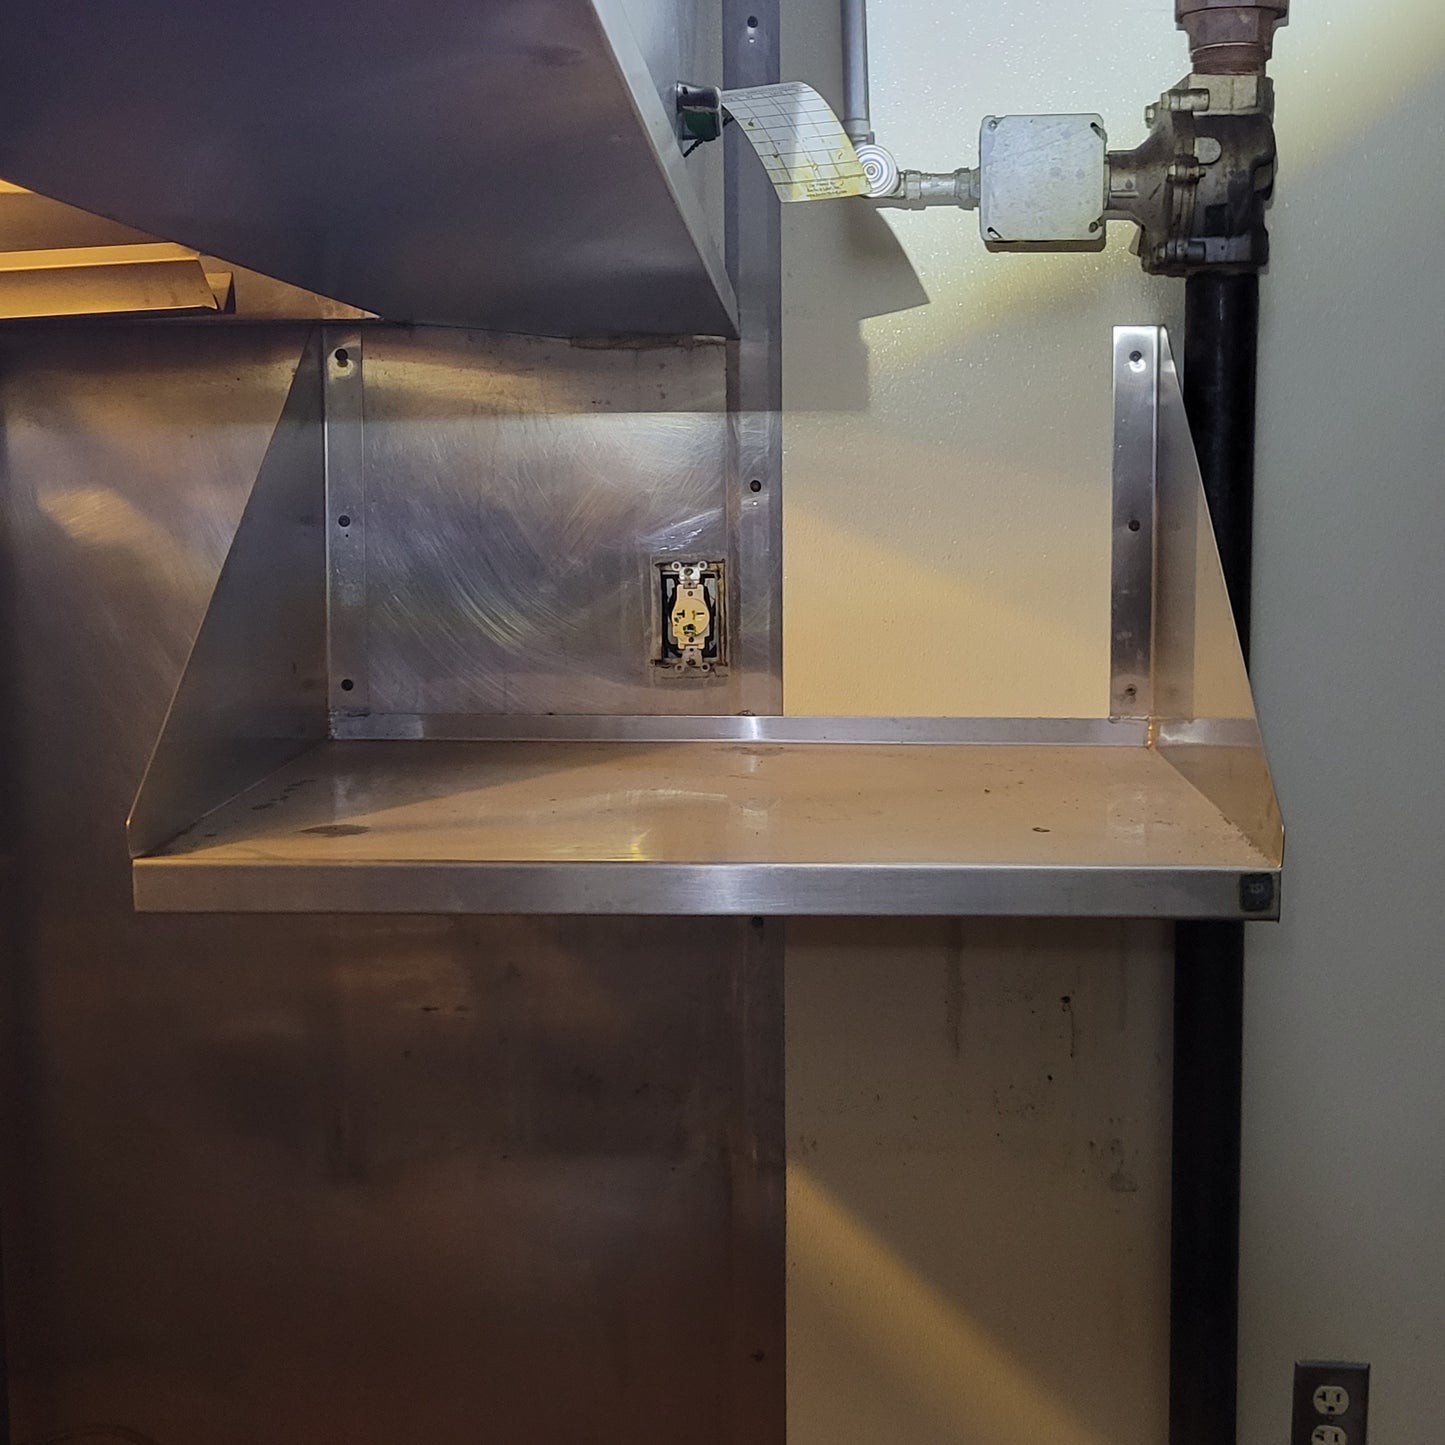 Microwave Stainless Steel Heavy Duty Shelf